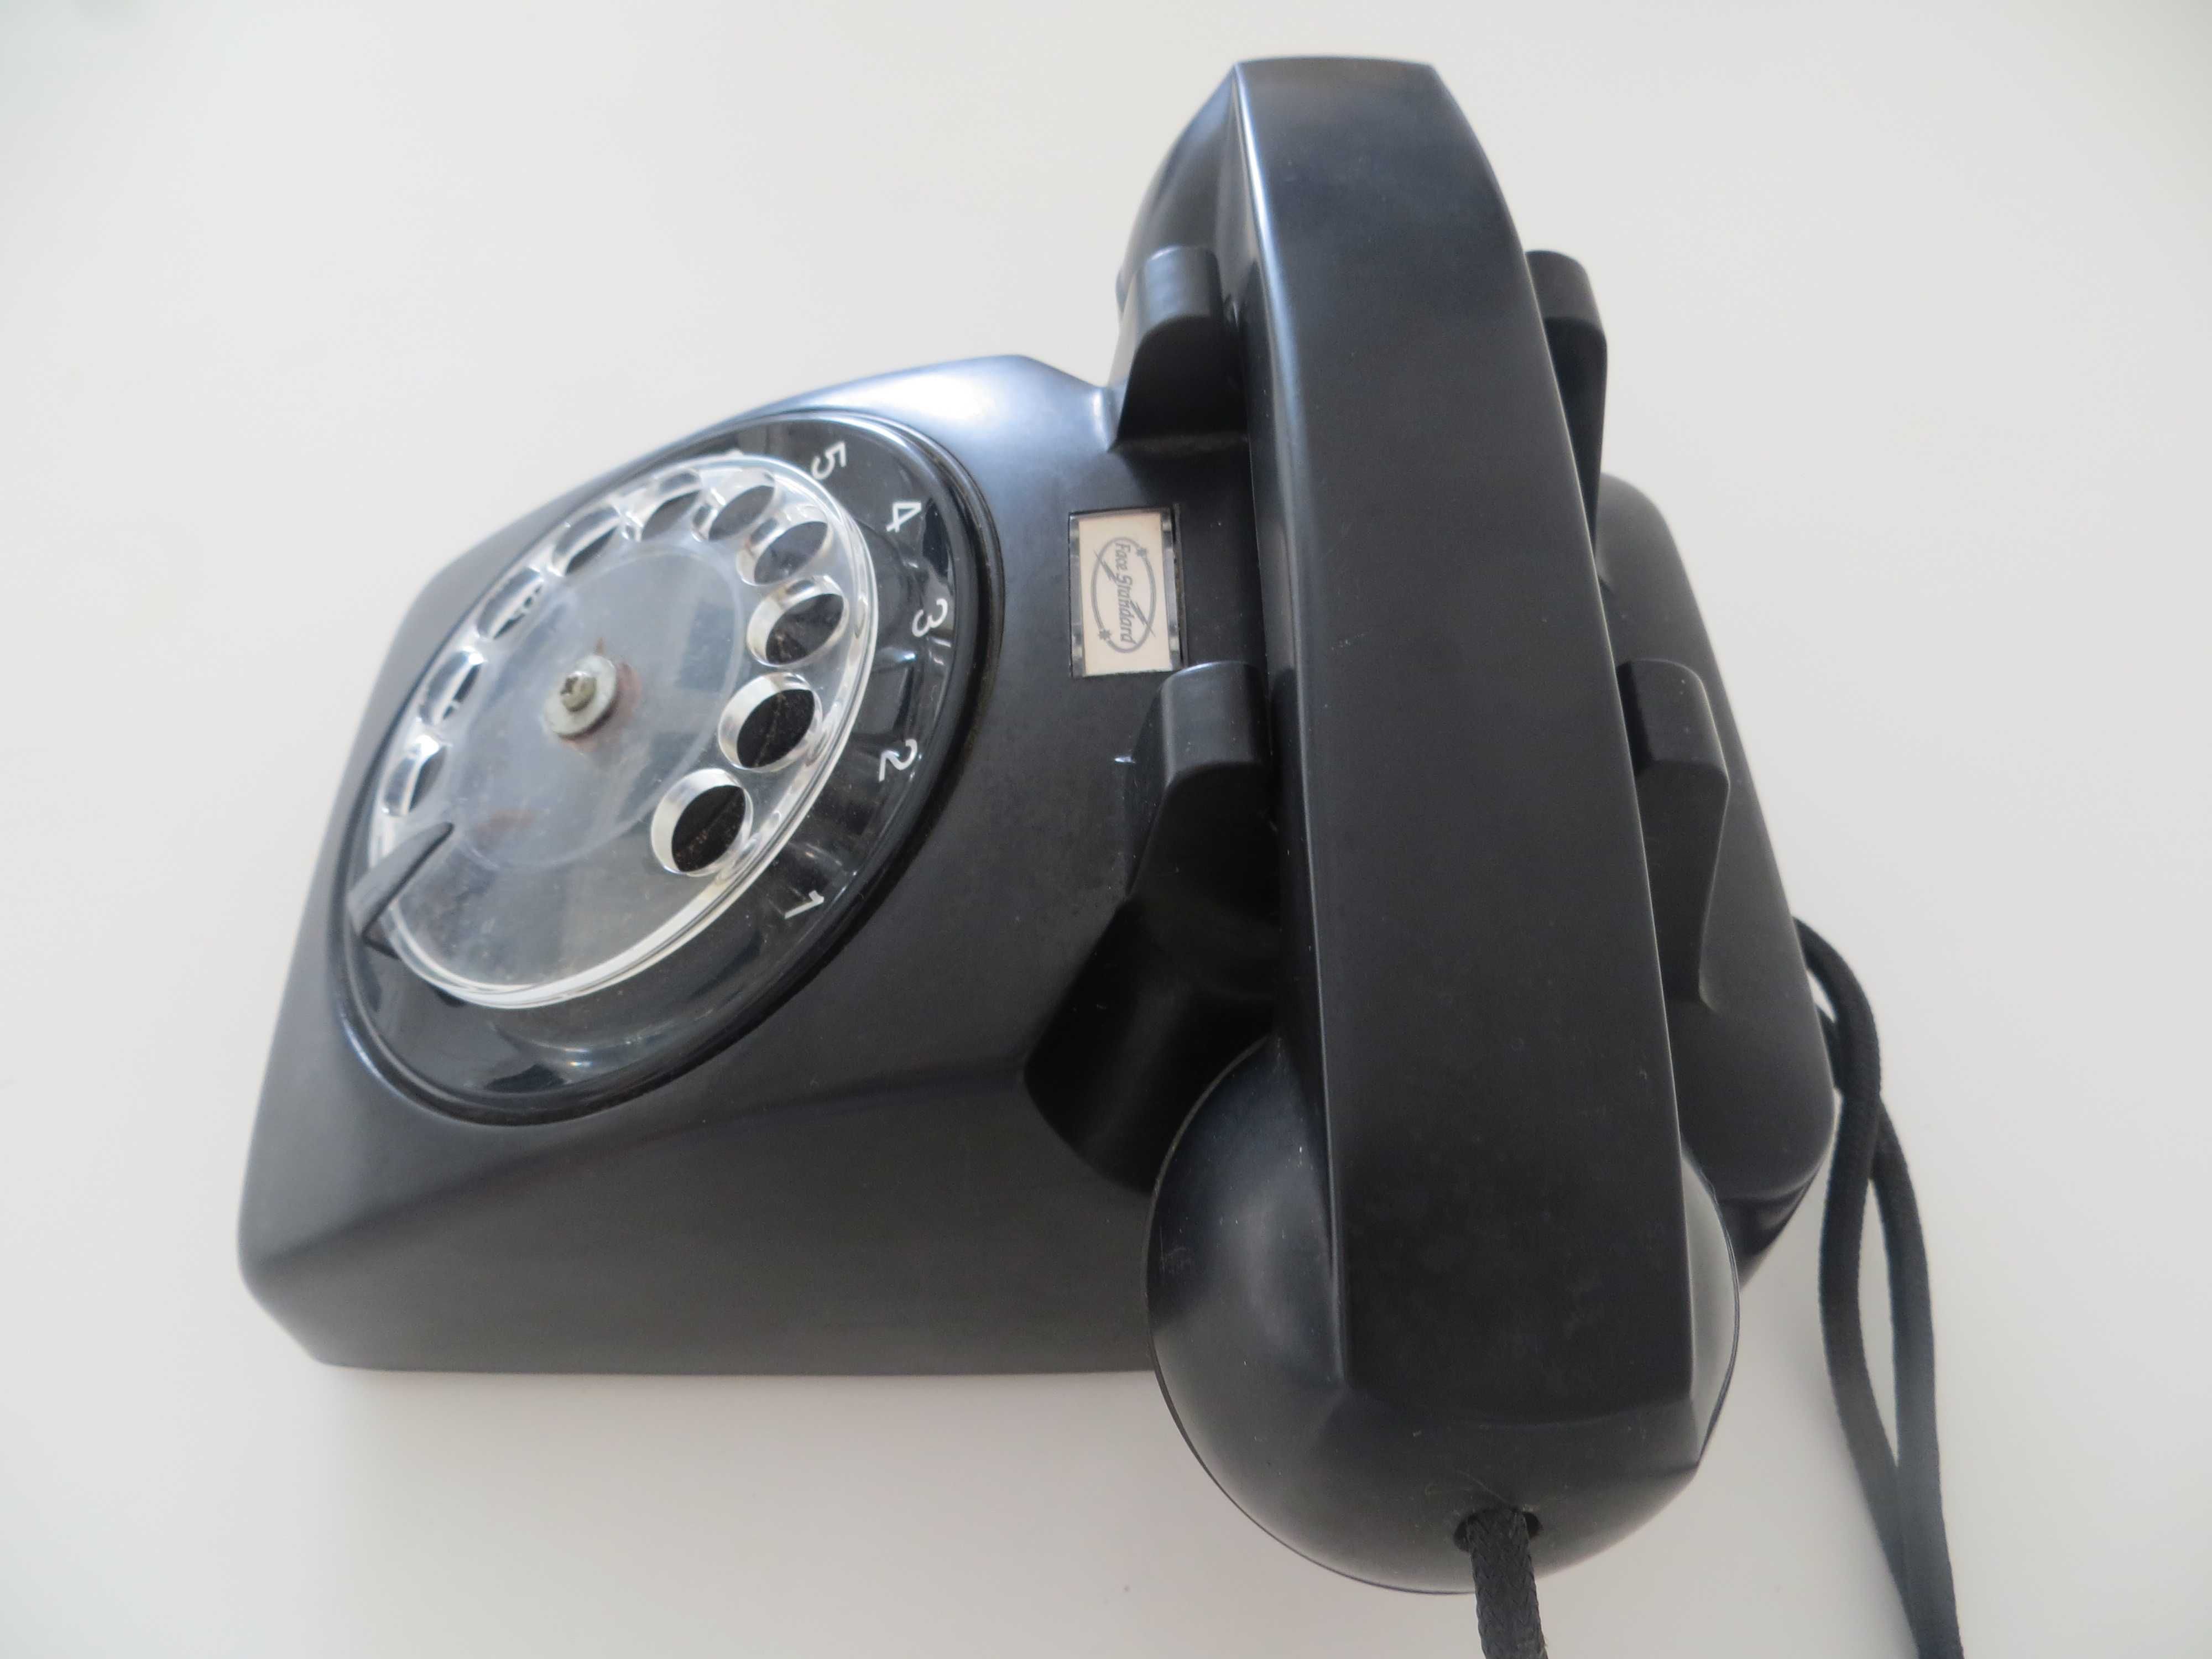 Telefone antigo preto